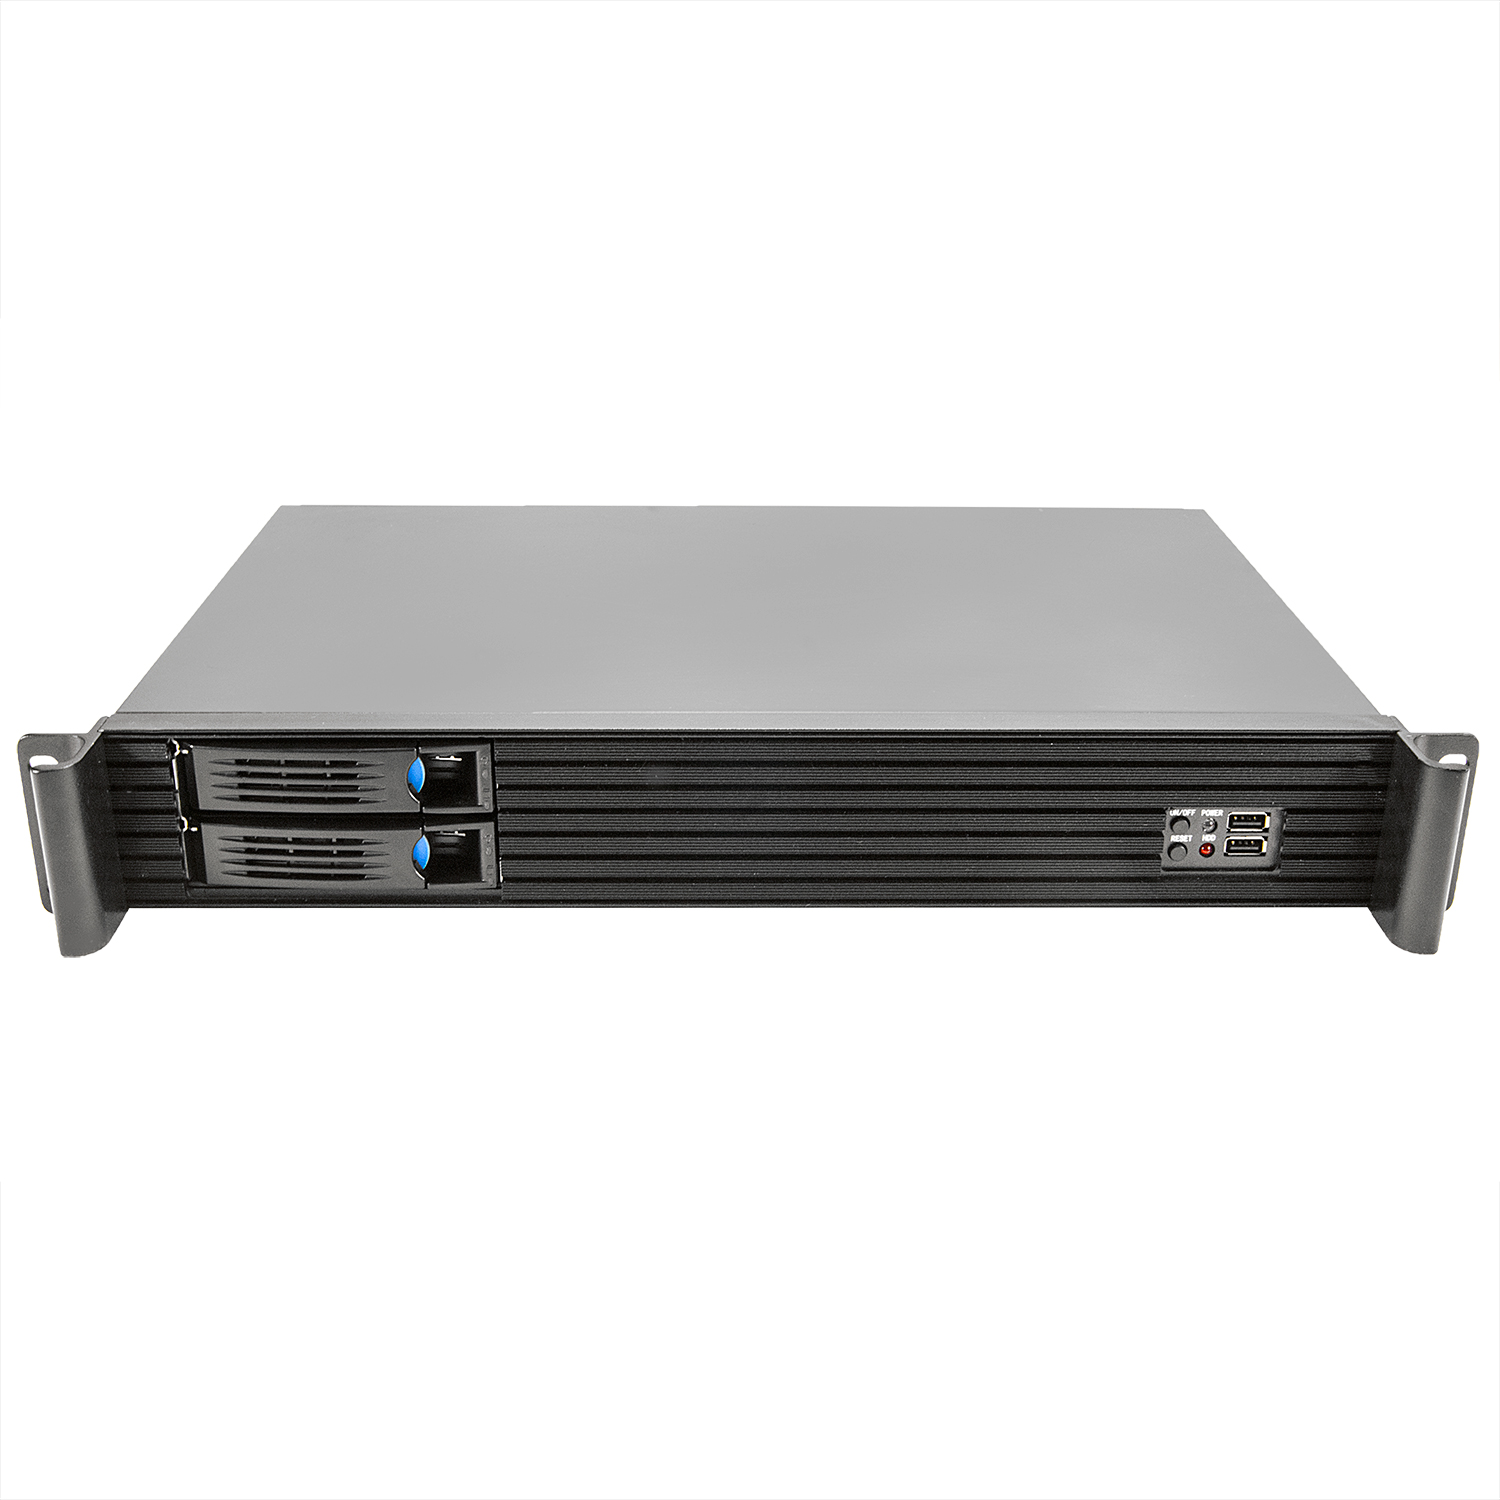 Серверный корпус 1.5U NR-R152 300Вт (MiniITX, 2x3.5"hotswap SATA, 2x2.5"int, 280mm) черный, NegoRack